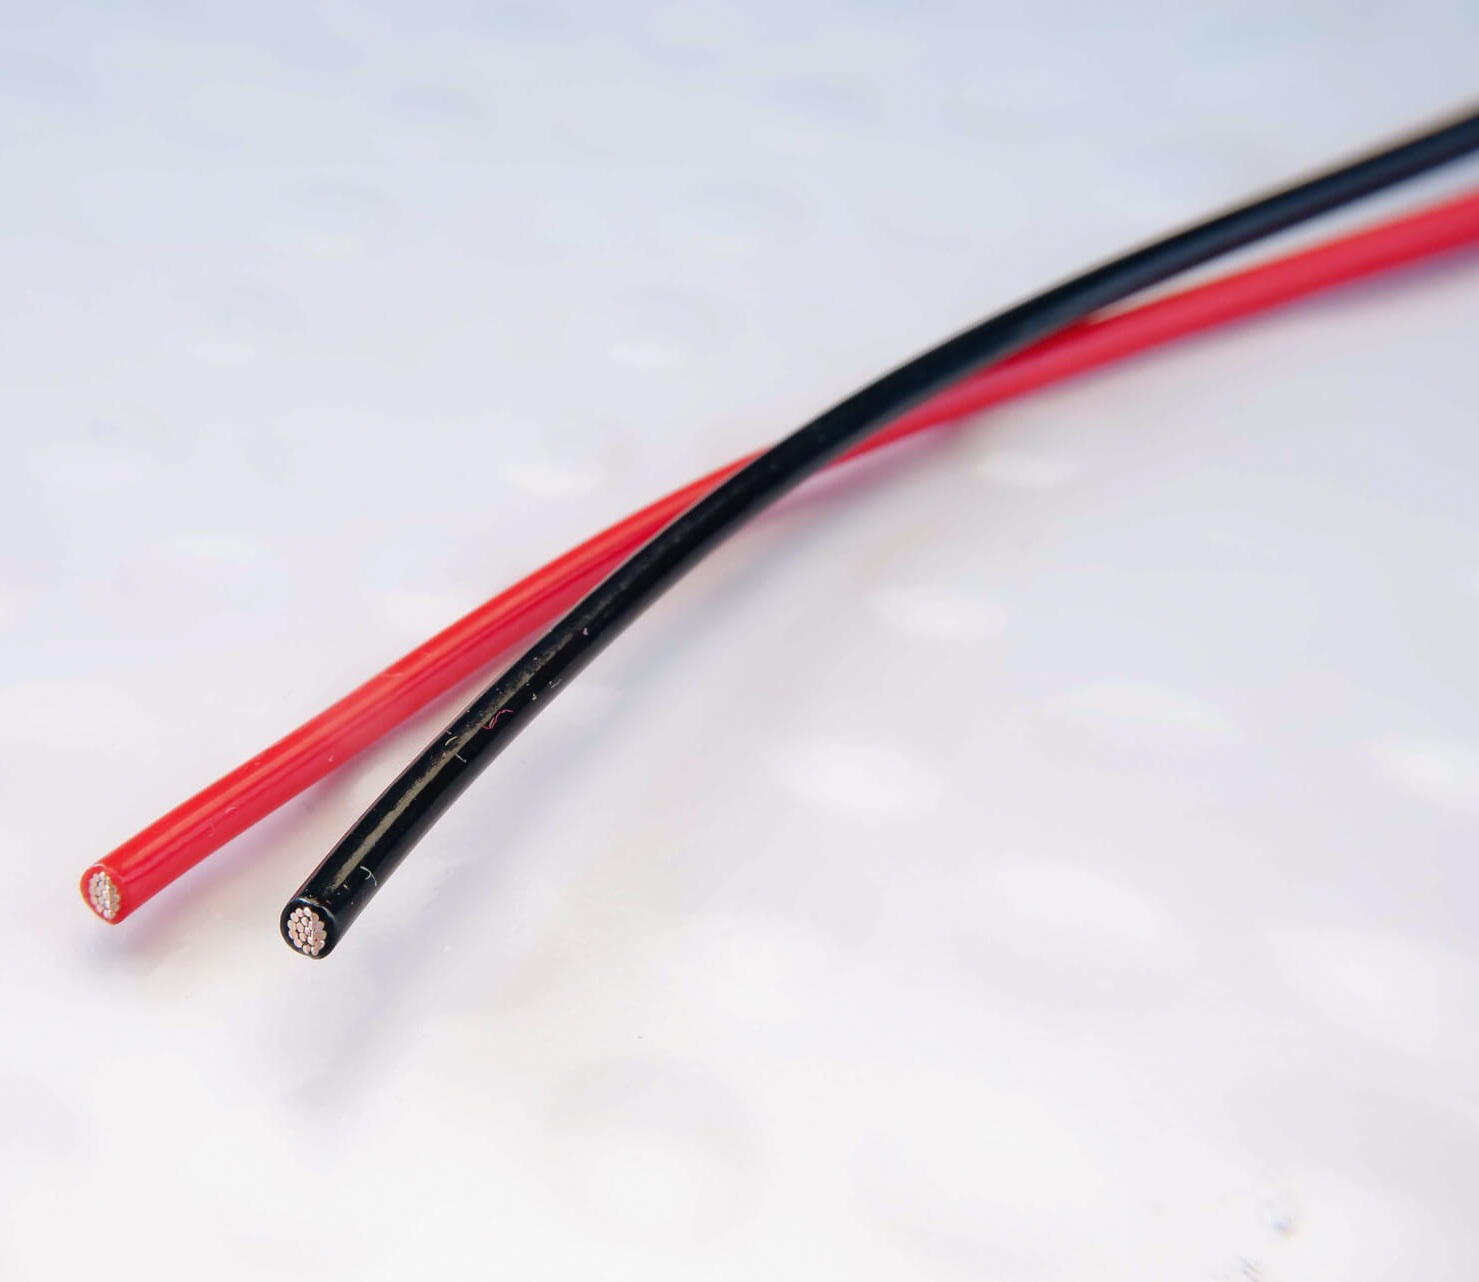 Монтажный кабель DH Labs OFH-12/red м/кат